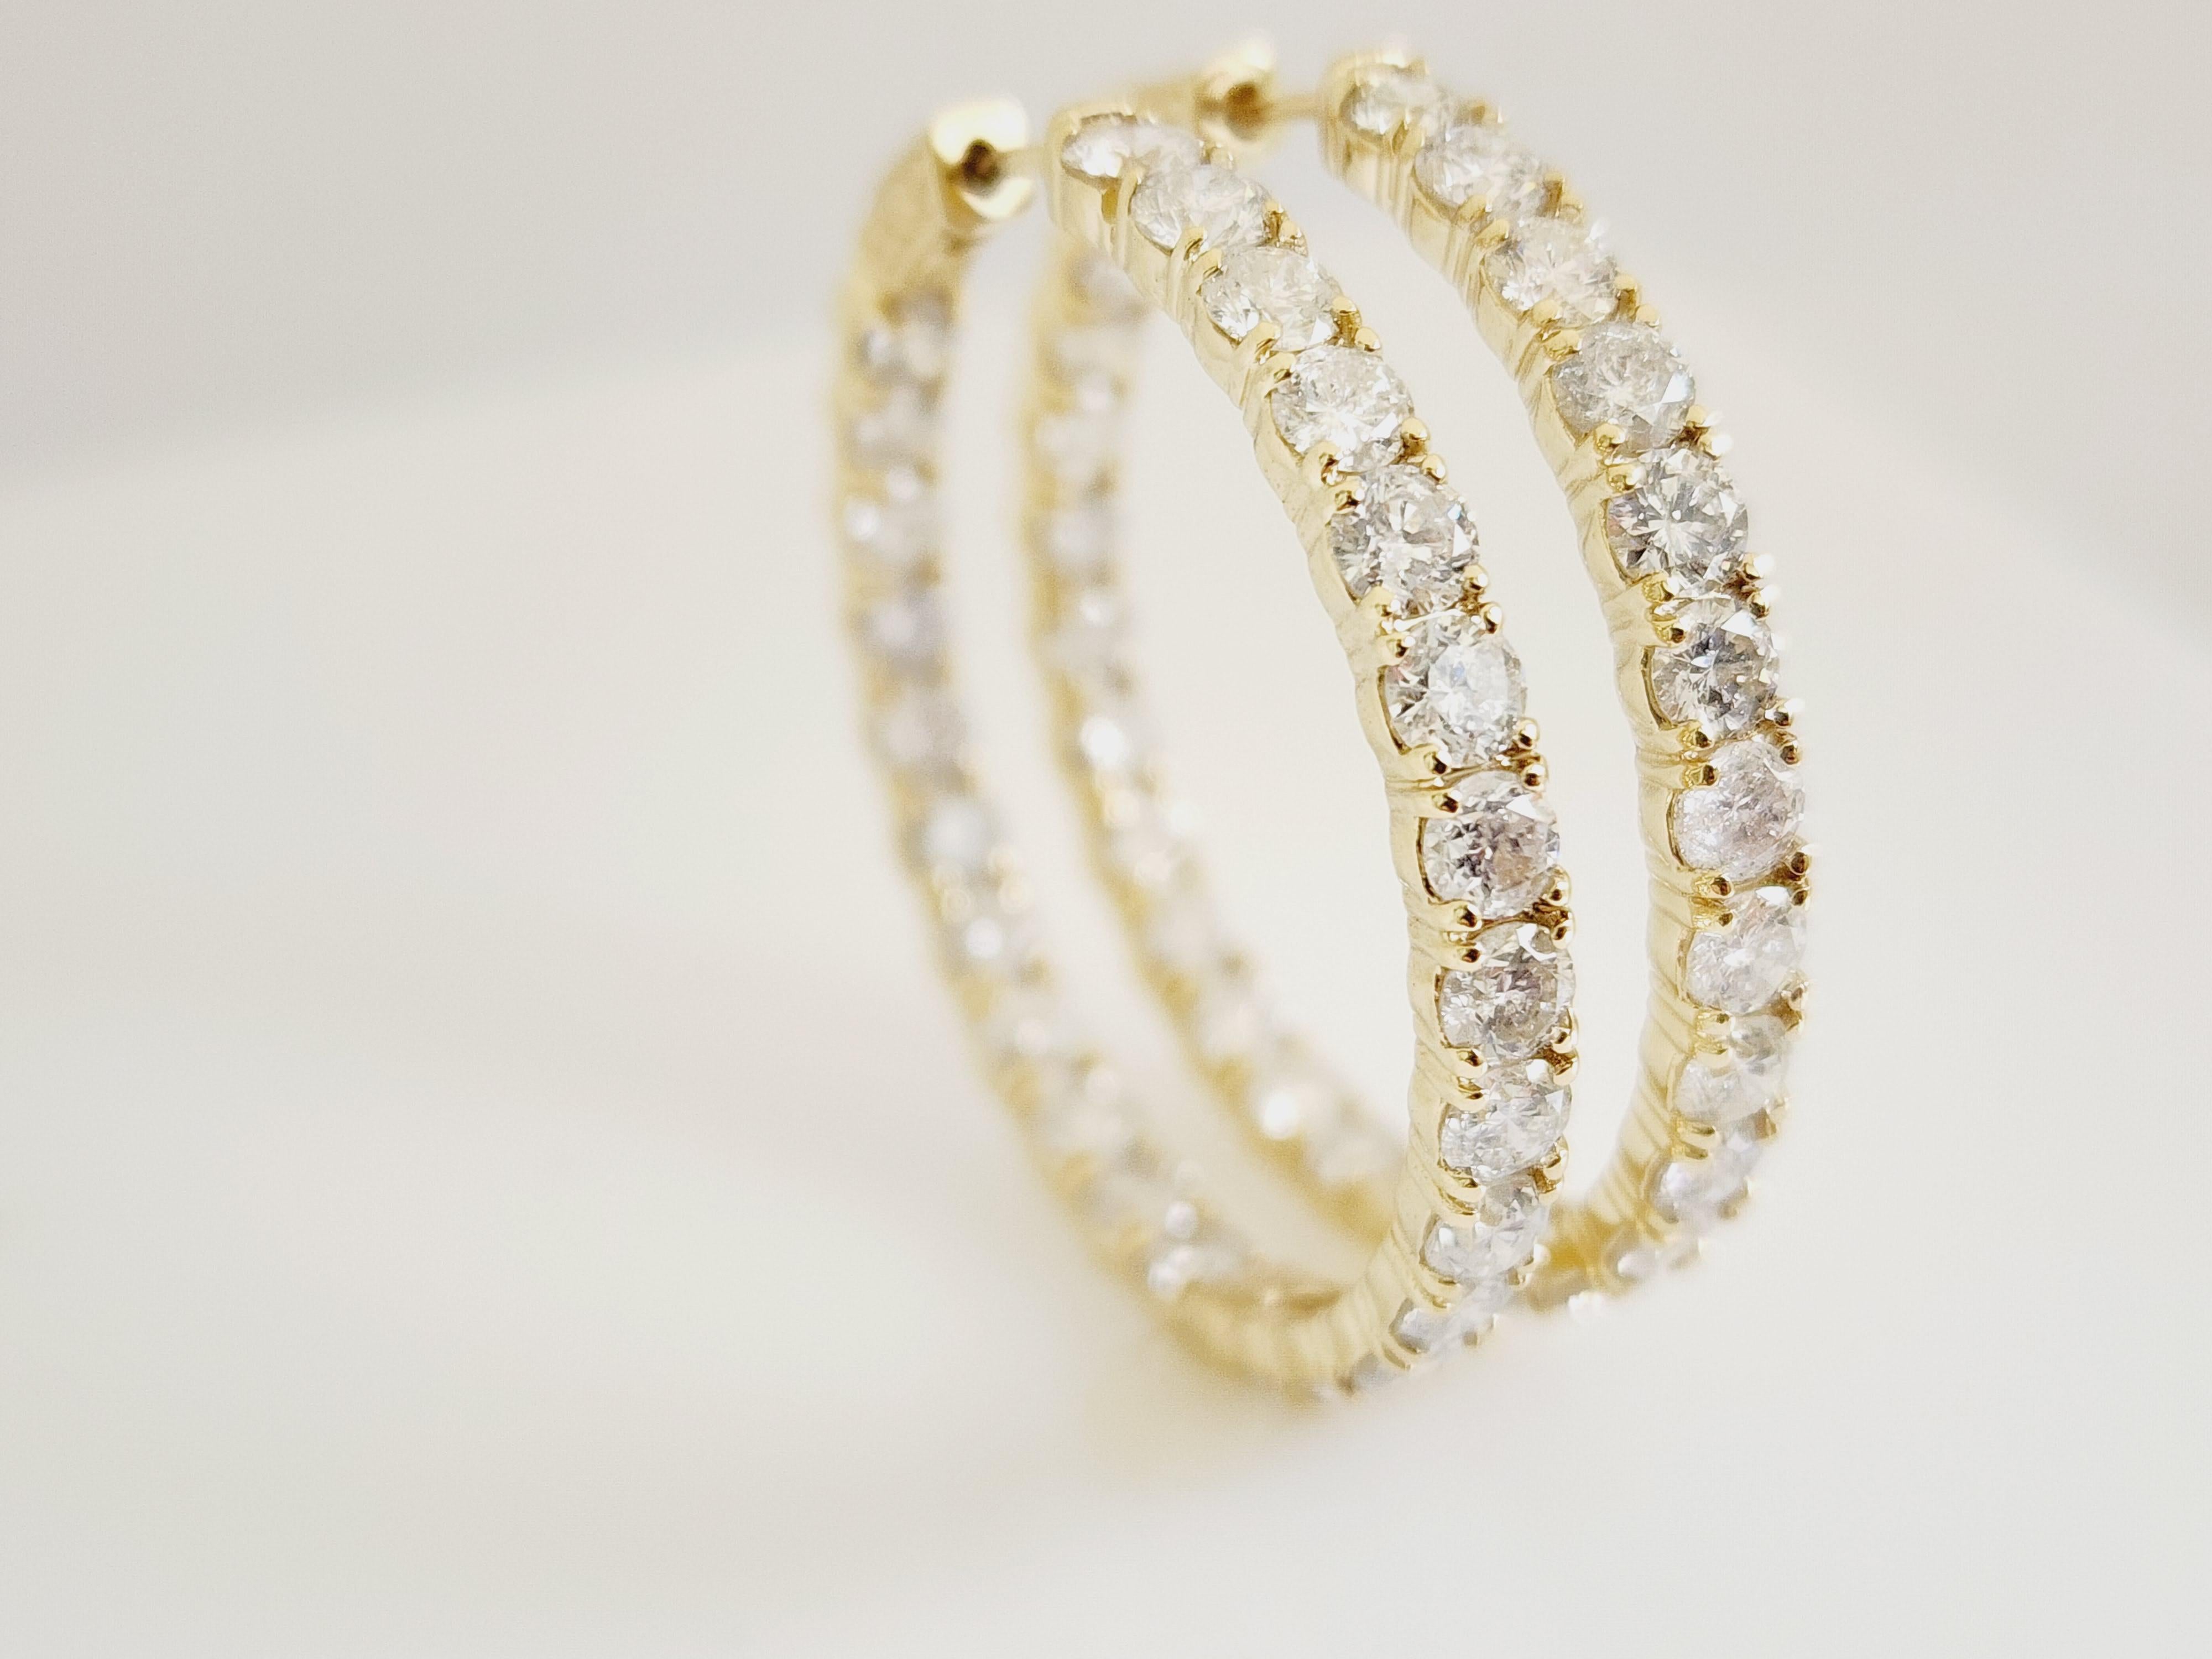 10 Carat Diamond Hoops Earrings 14 Karat Yellow Gold For Sale 3